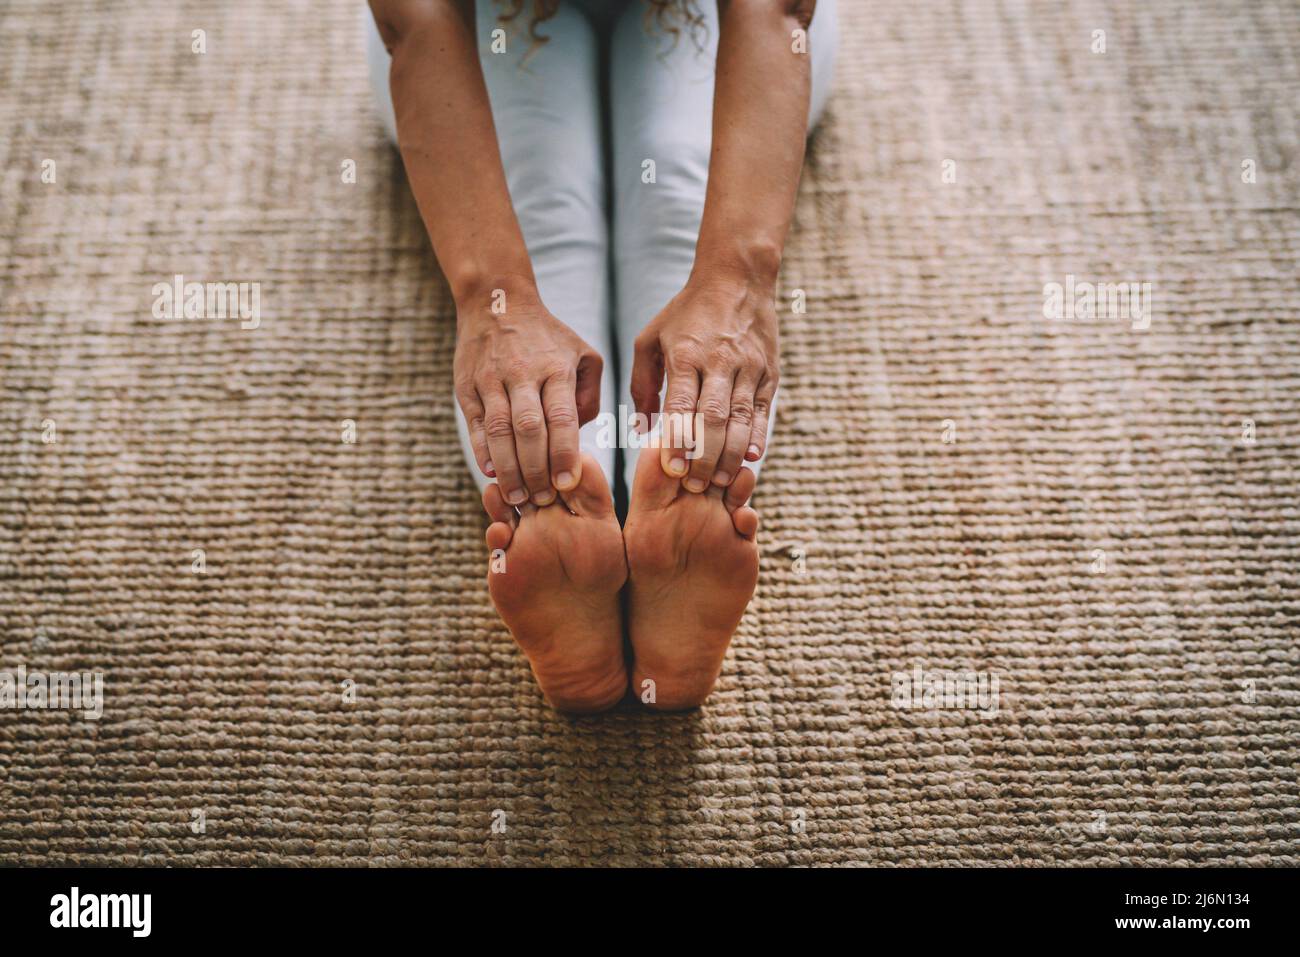 Donna adulta matura e fitness attività sana a casa. Donna su tappeto che tocca i suoi piedi con le mani per uno stile di vita attivo allenamento. Foto Stock